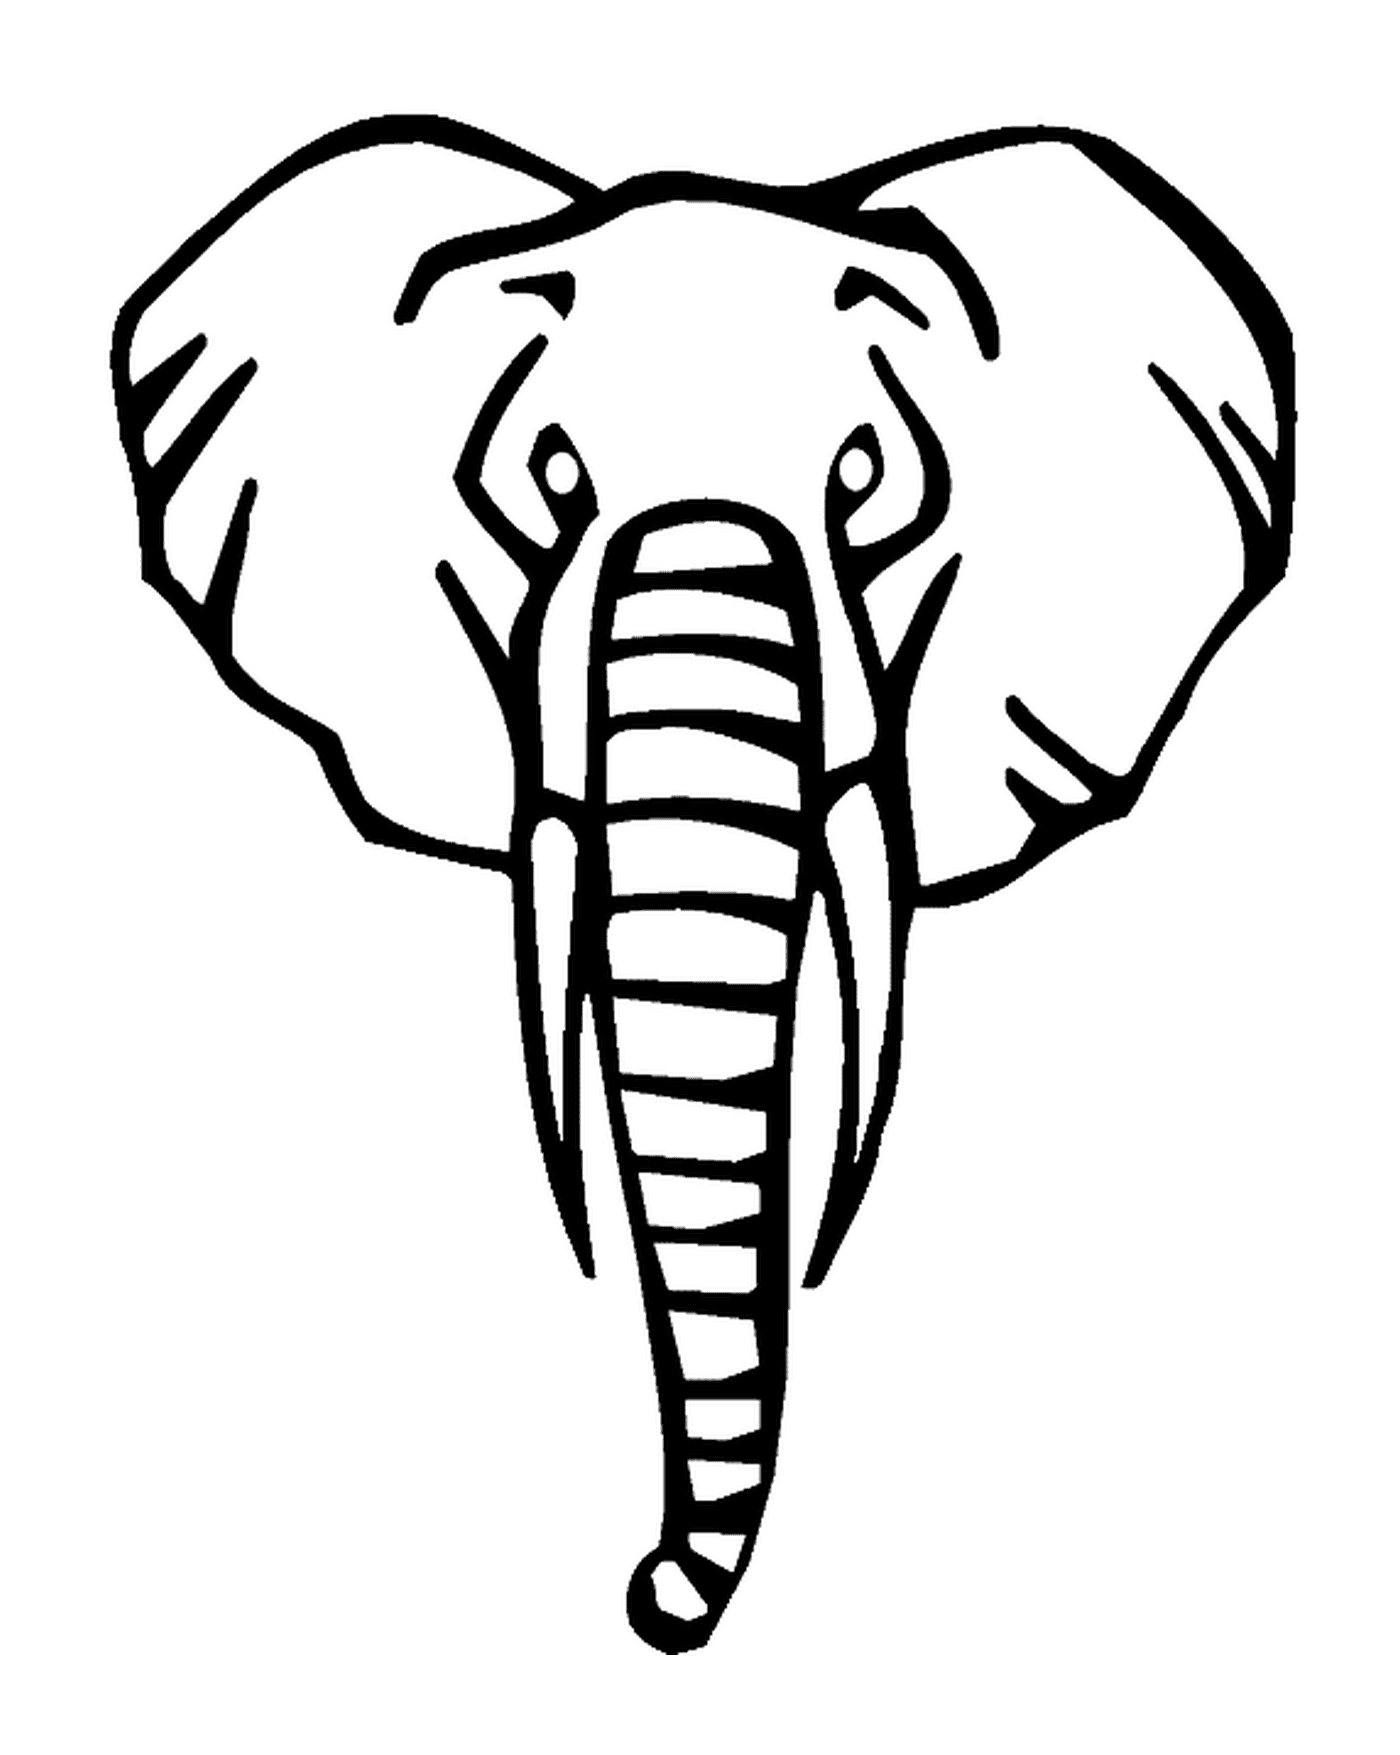  हाथी का सिर 